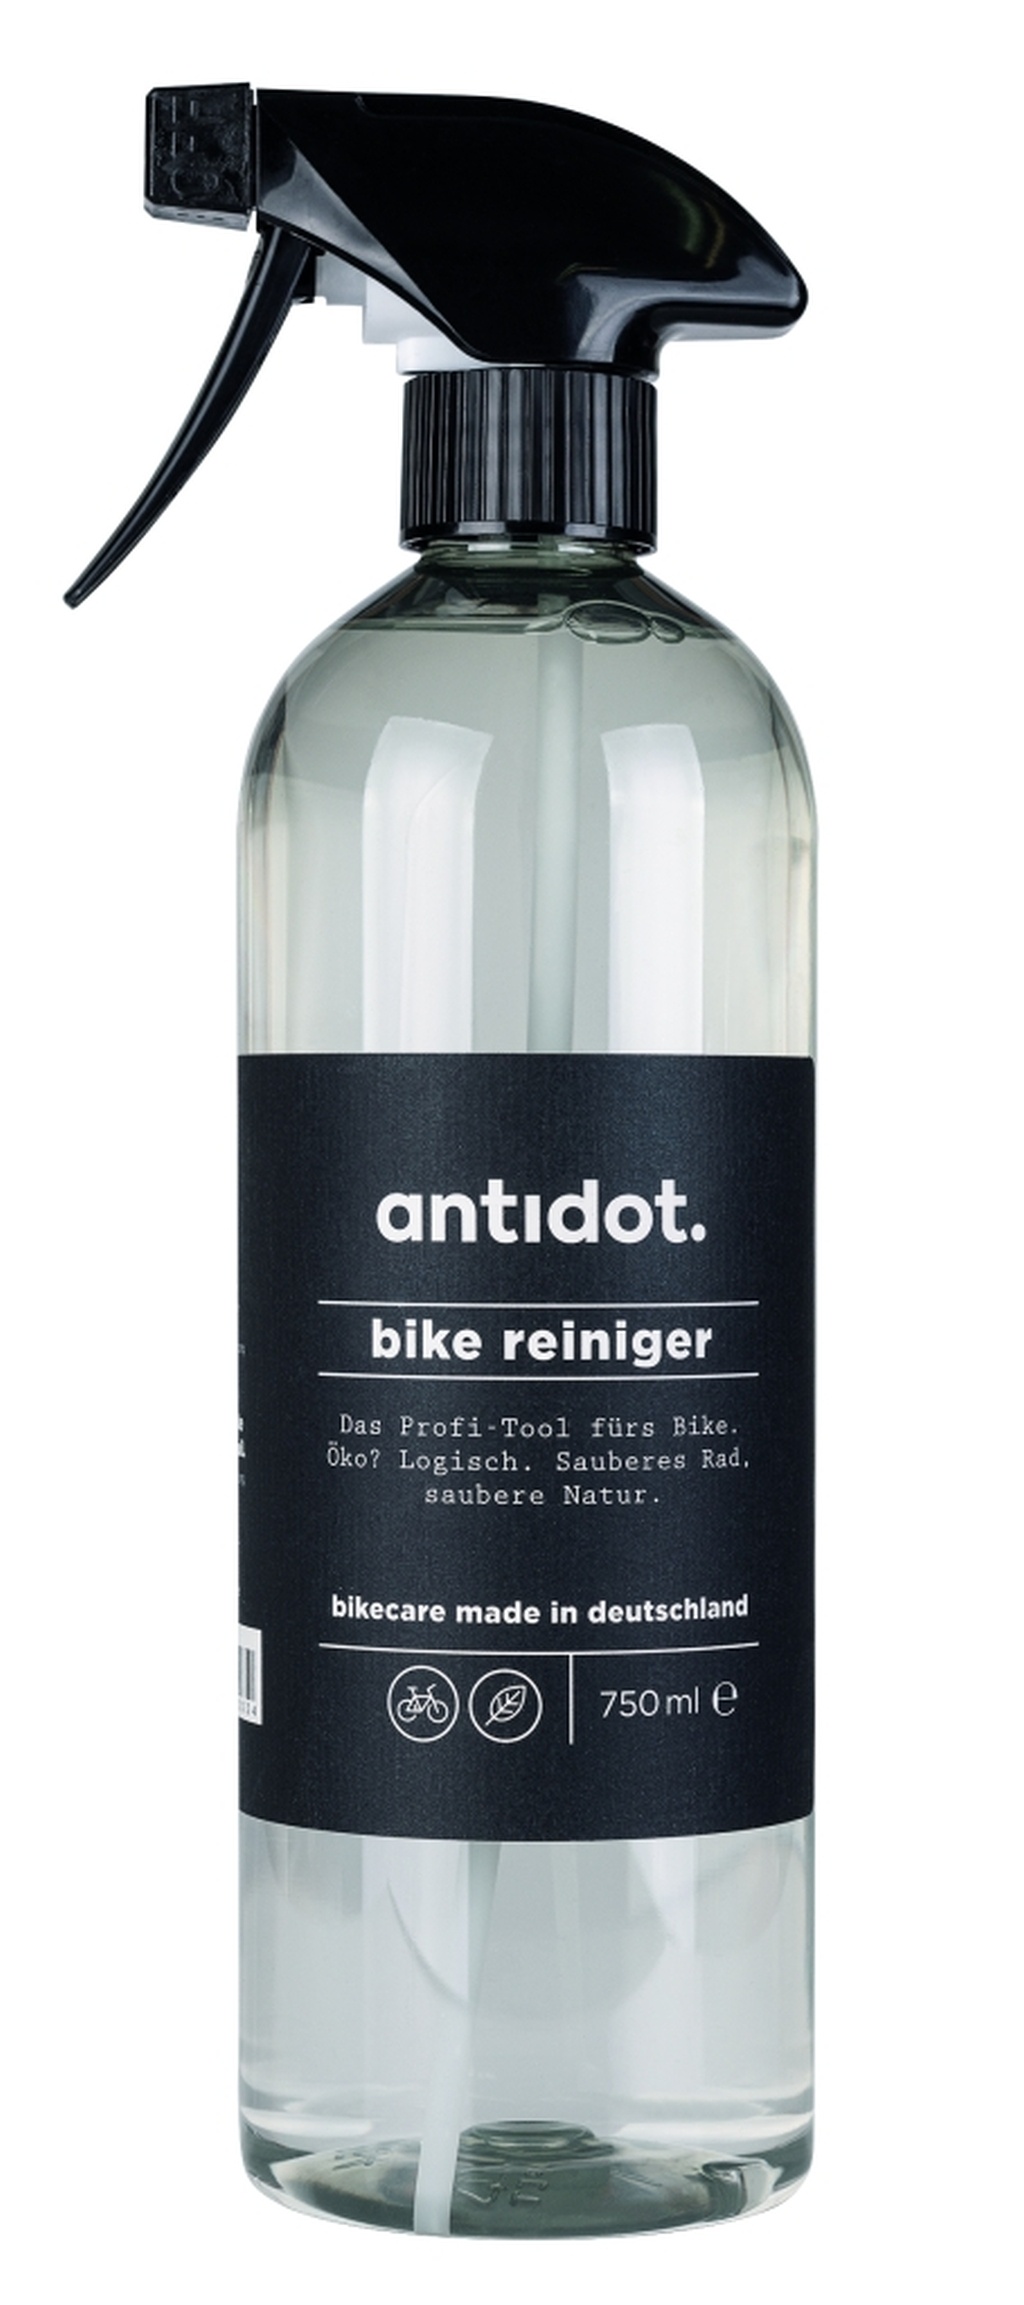 Antidot bike Reiniger 750ml Art.Nr.: 601441486 • 100% biologisch abbaubare Basis • Flasche aus 100% recyceltem PET • Bringt jedes Fahrrad und E-Bike zum Glänzen • Entfernt auch hartnäckige Rückstände • Einfach in der Anwendung • Auch als Nachfüllpack erhältlich